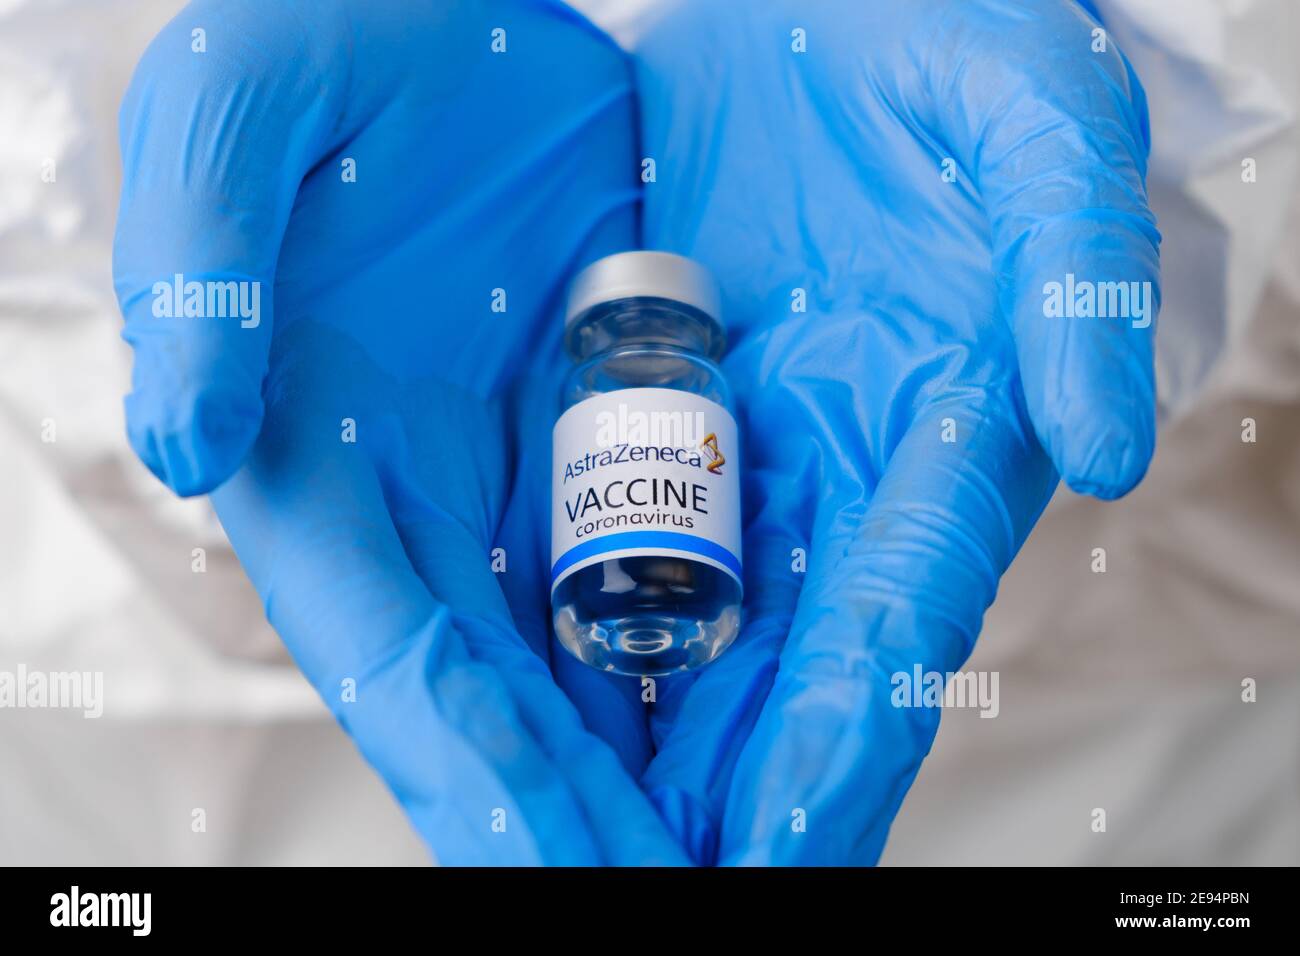 Vaccino AstraZeneca per la prevenzione del coronavirus, Covid-19, Sars-Cov-2 in medici mani in guanti di gomma blu, gennaio 2021, San Francisco, USA. Foto Stock